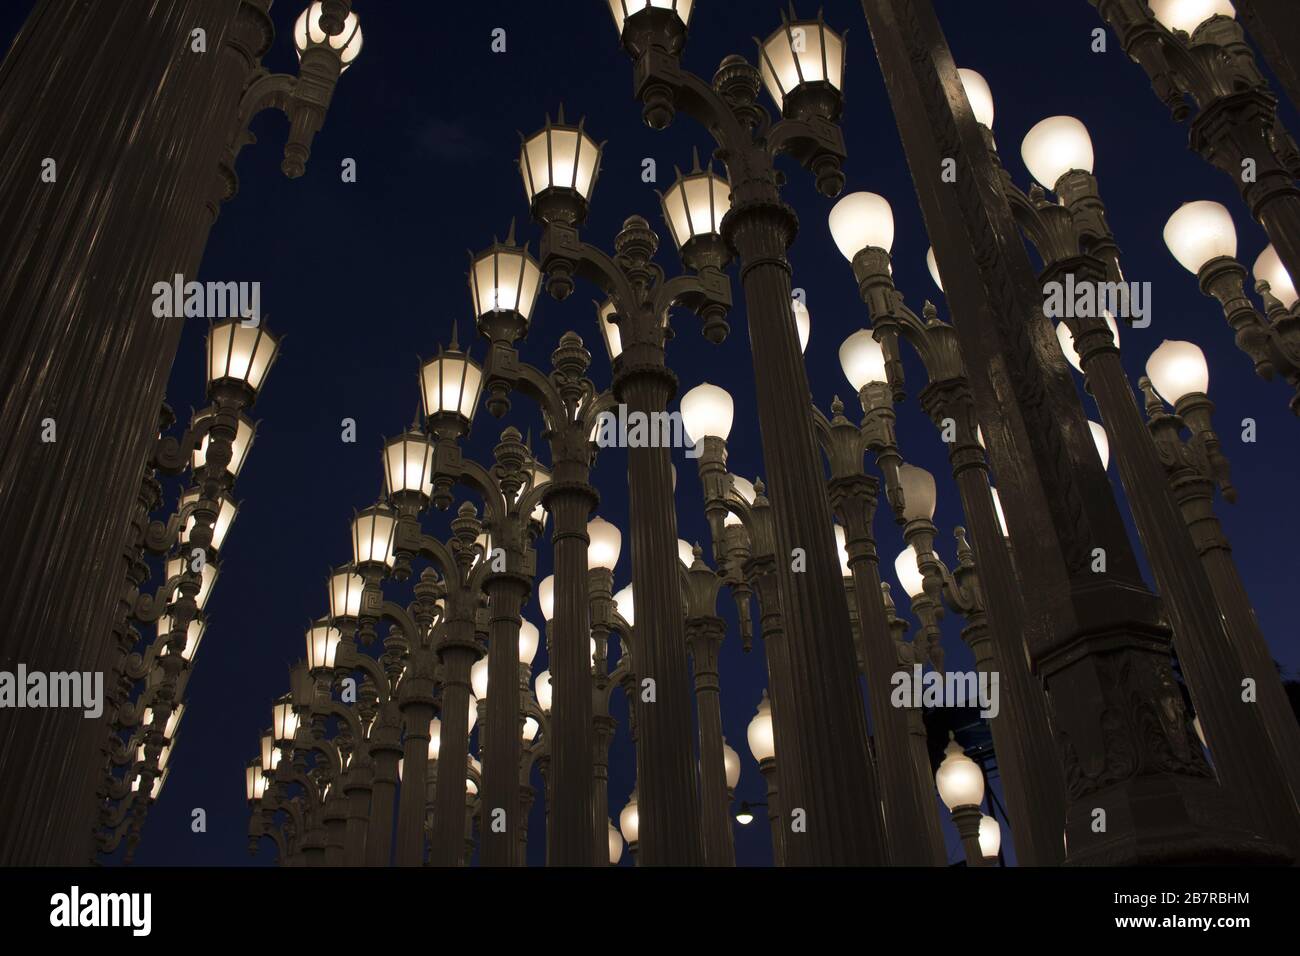 Lampen des Los Angeles County Museum of Art während Die Nacht in den USA  Stockfotografie - Alamy